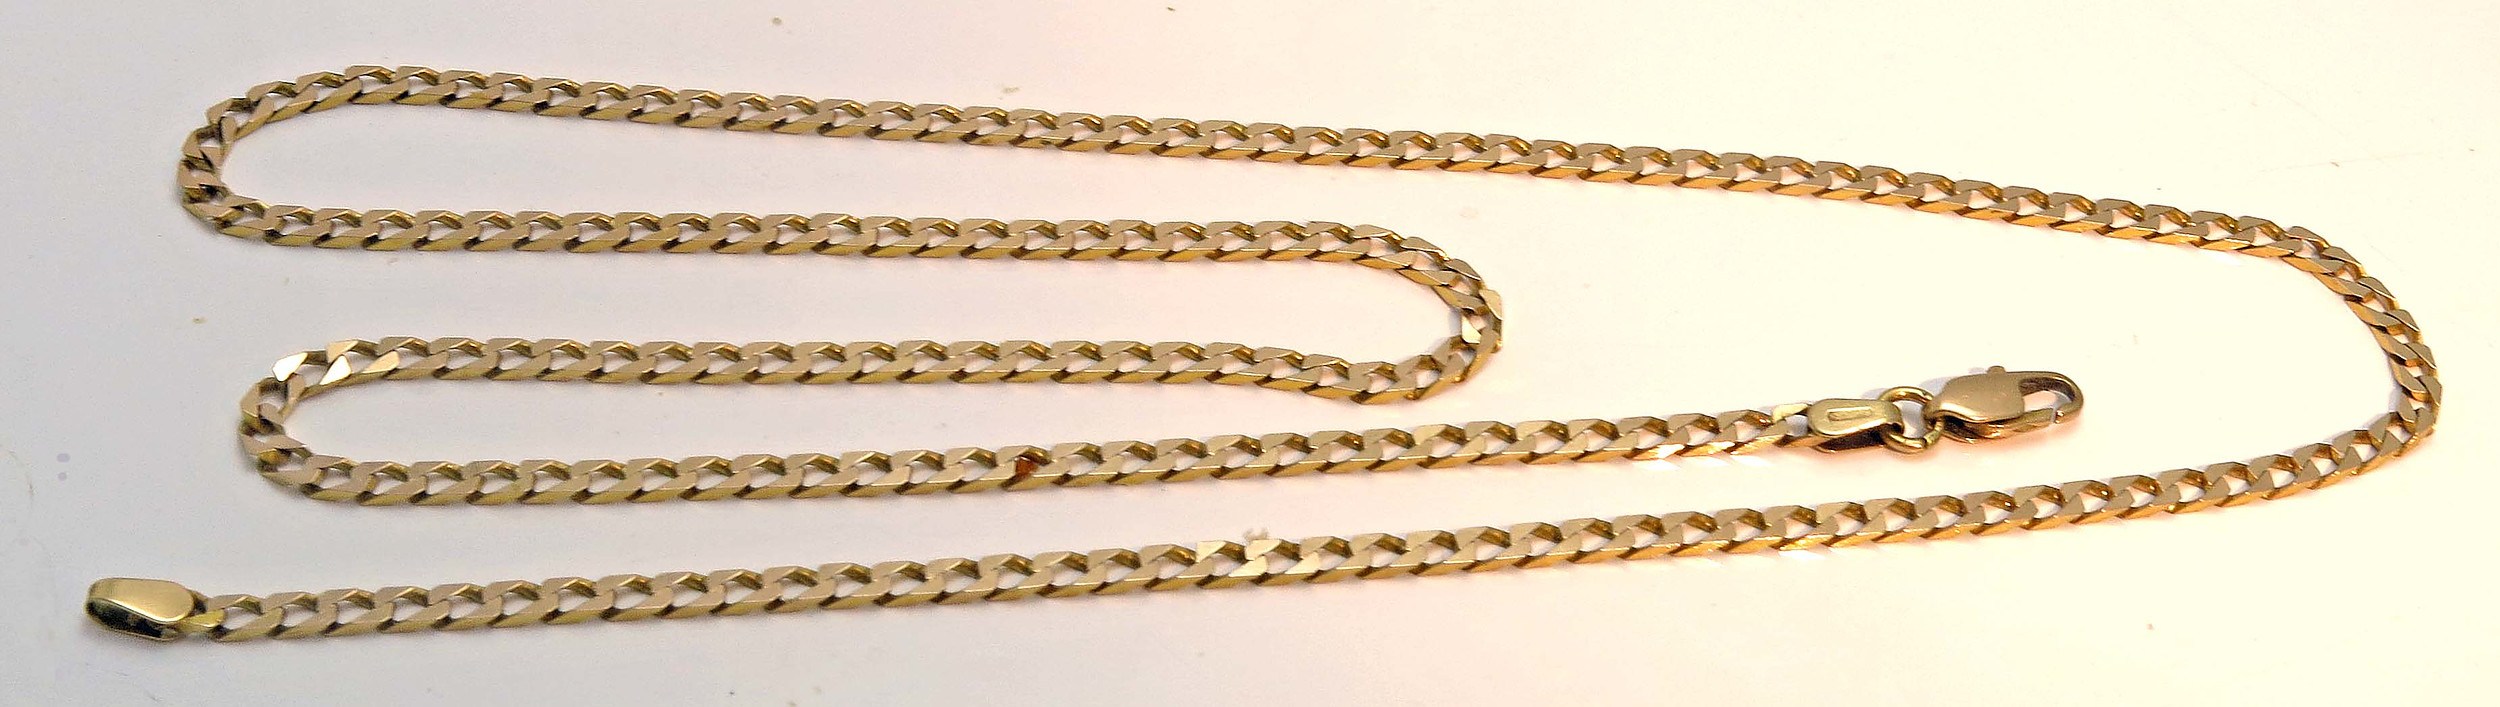 9ct Gold Chain Italian Diamond-Cut - Lot 1205394 | ALLBIDS